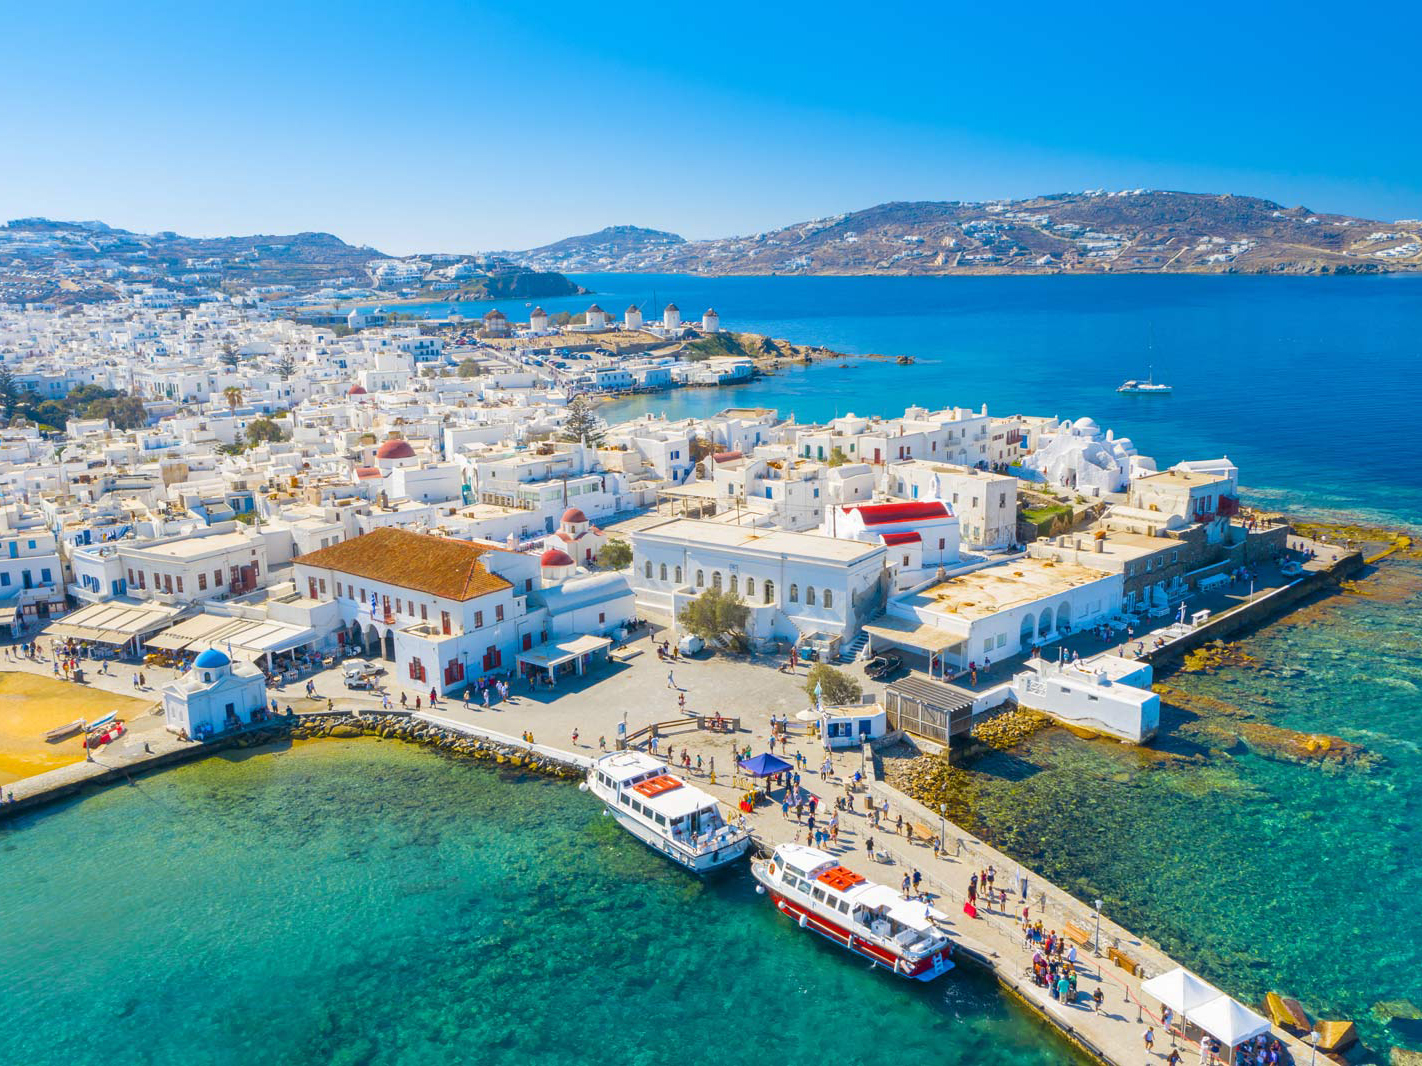 Best Destination for First Europe Trip - Mykonos, Greece